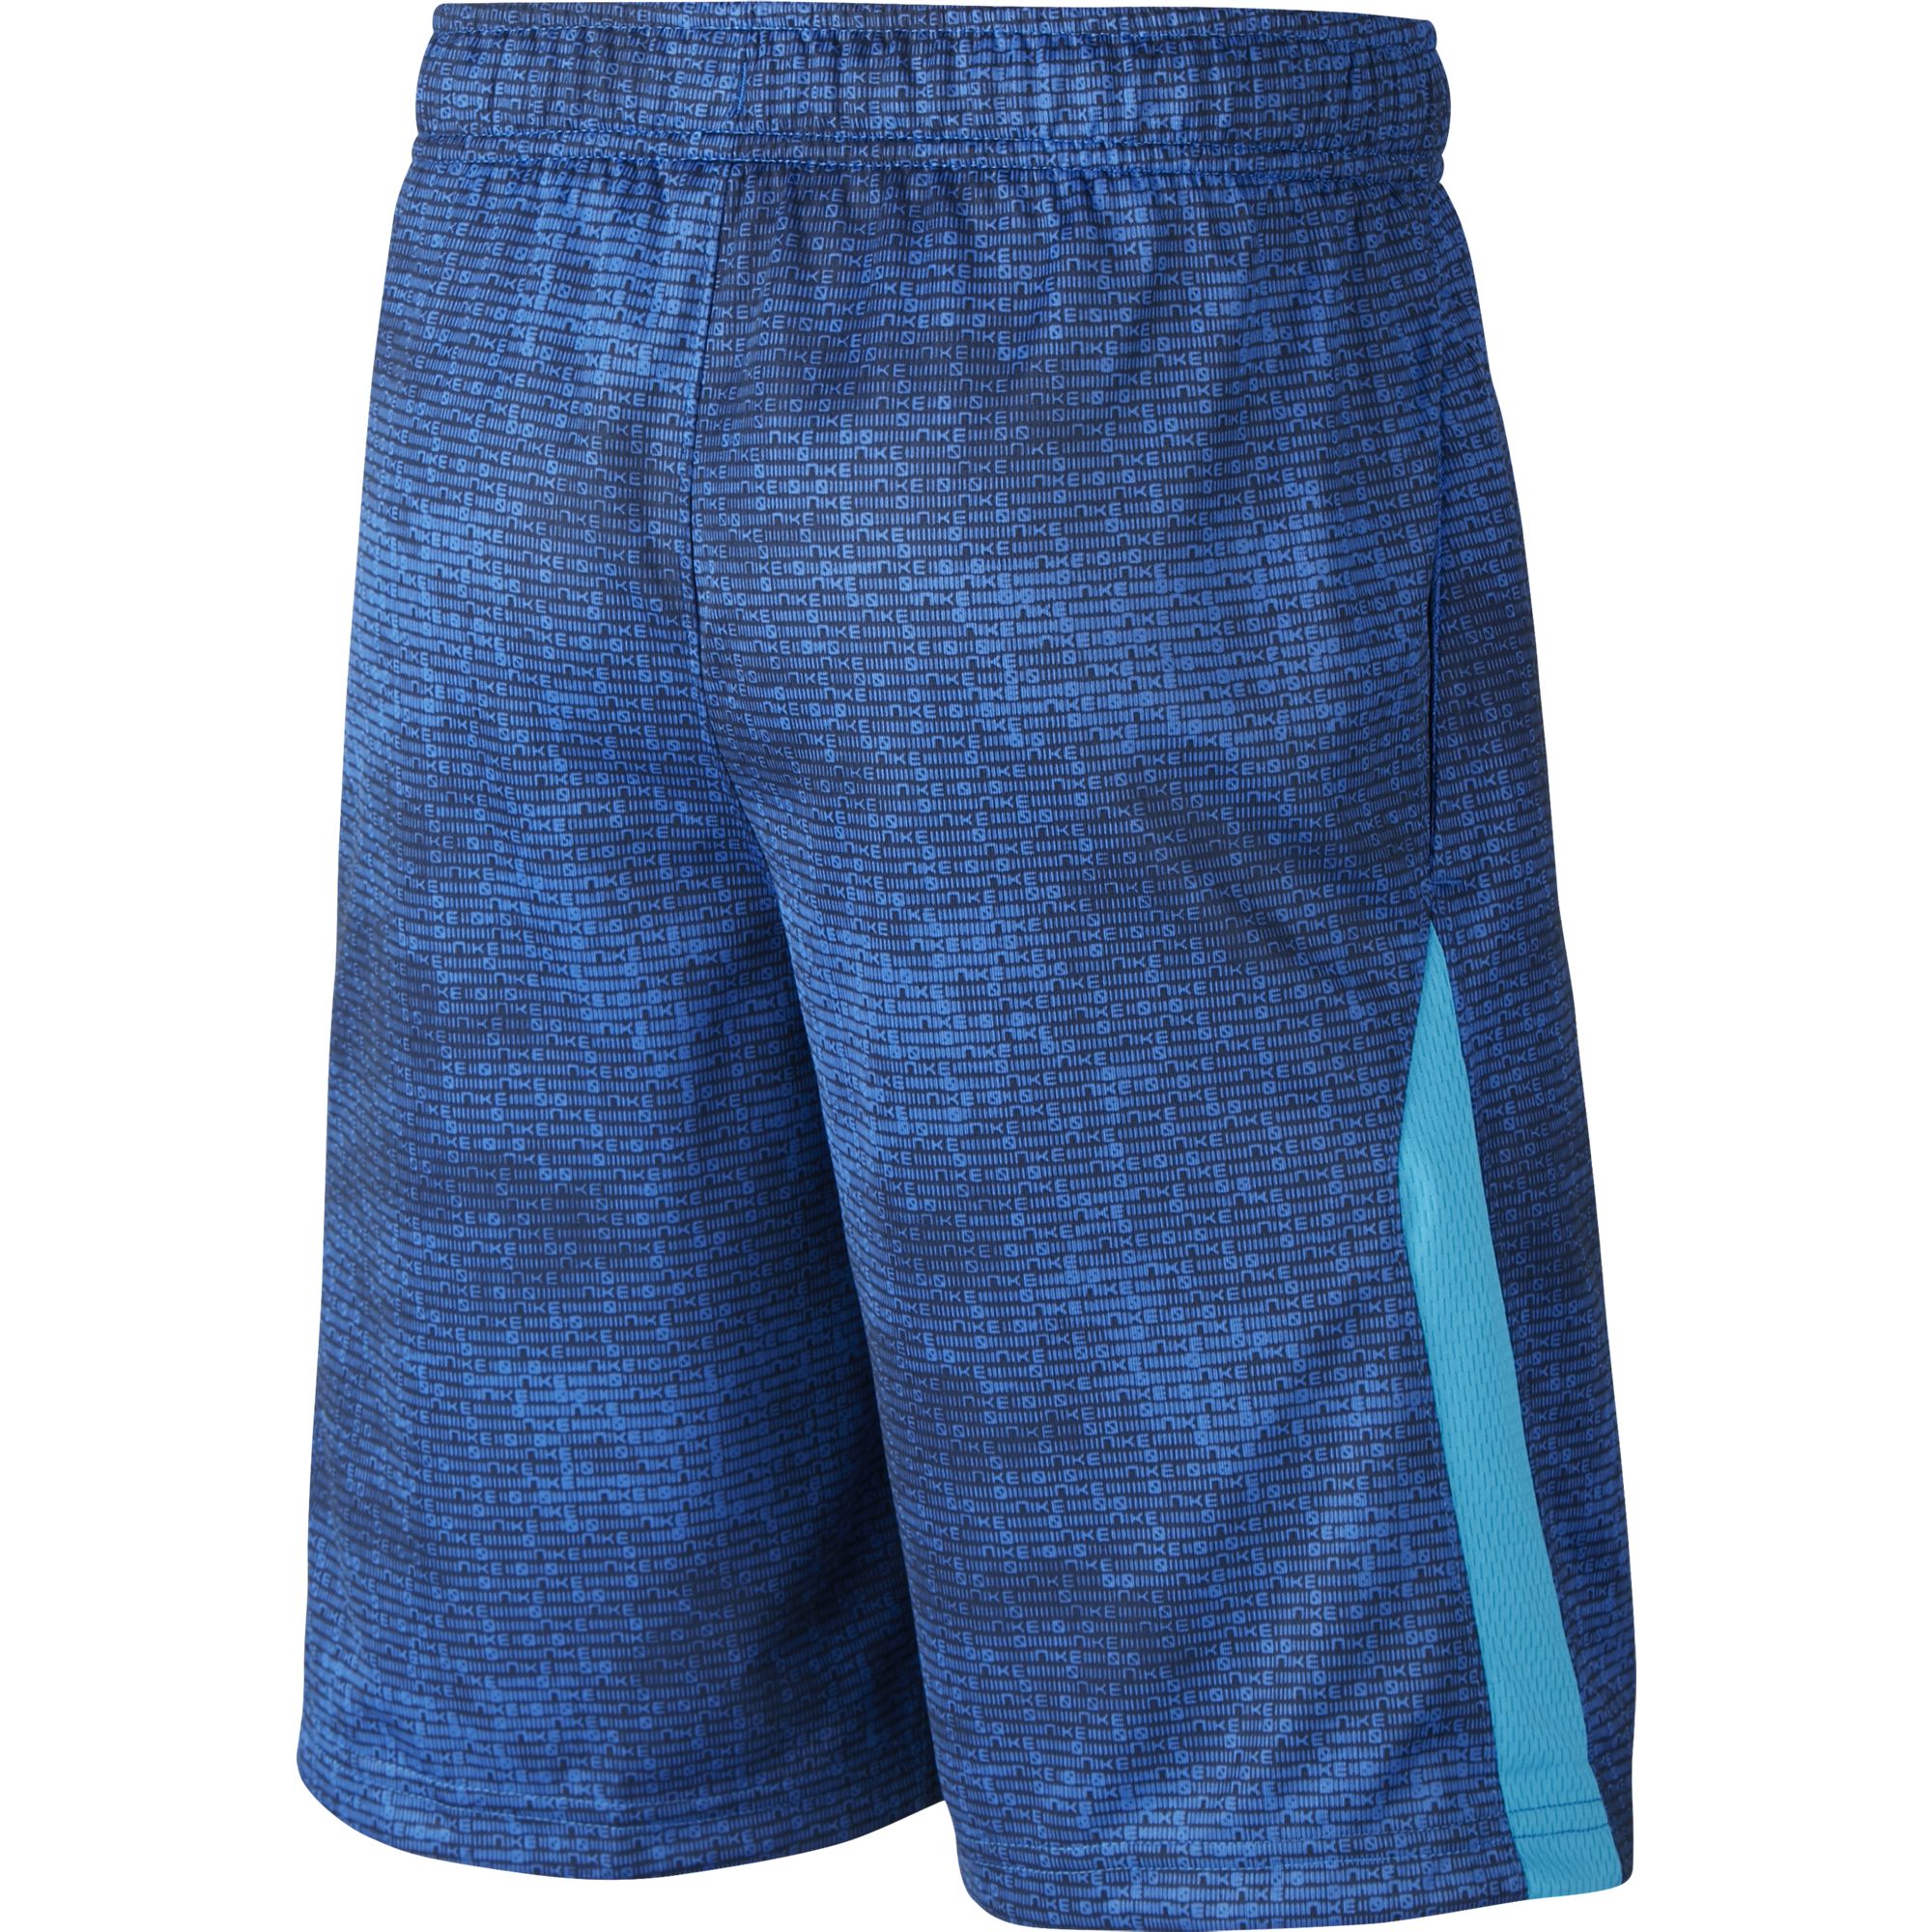 laser blue nike shorts